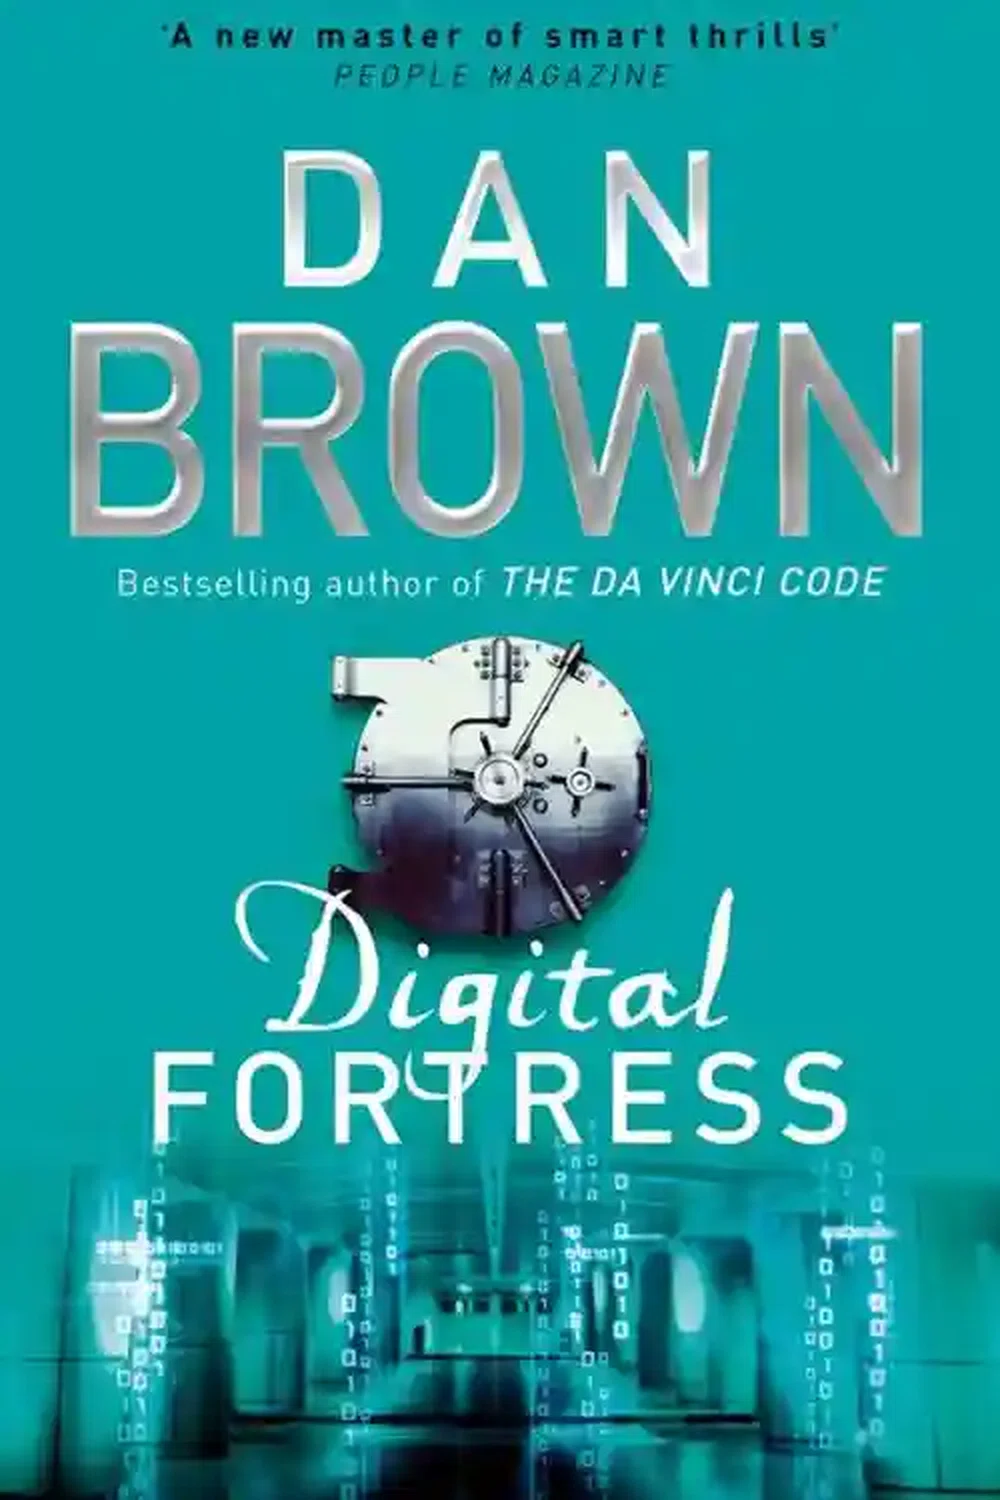 साइबर क्राइम पर आधारित 10 सर्वश्रेष्ठ पुस्तकें - डैन ब्राउन द्वारा डिजिटल फोर्ट्रेस